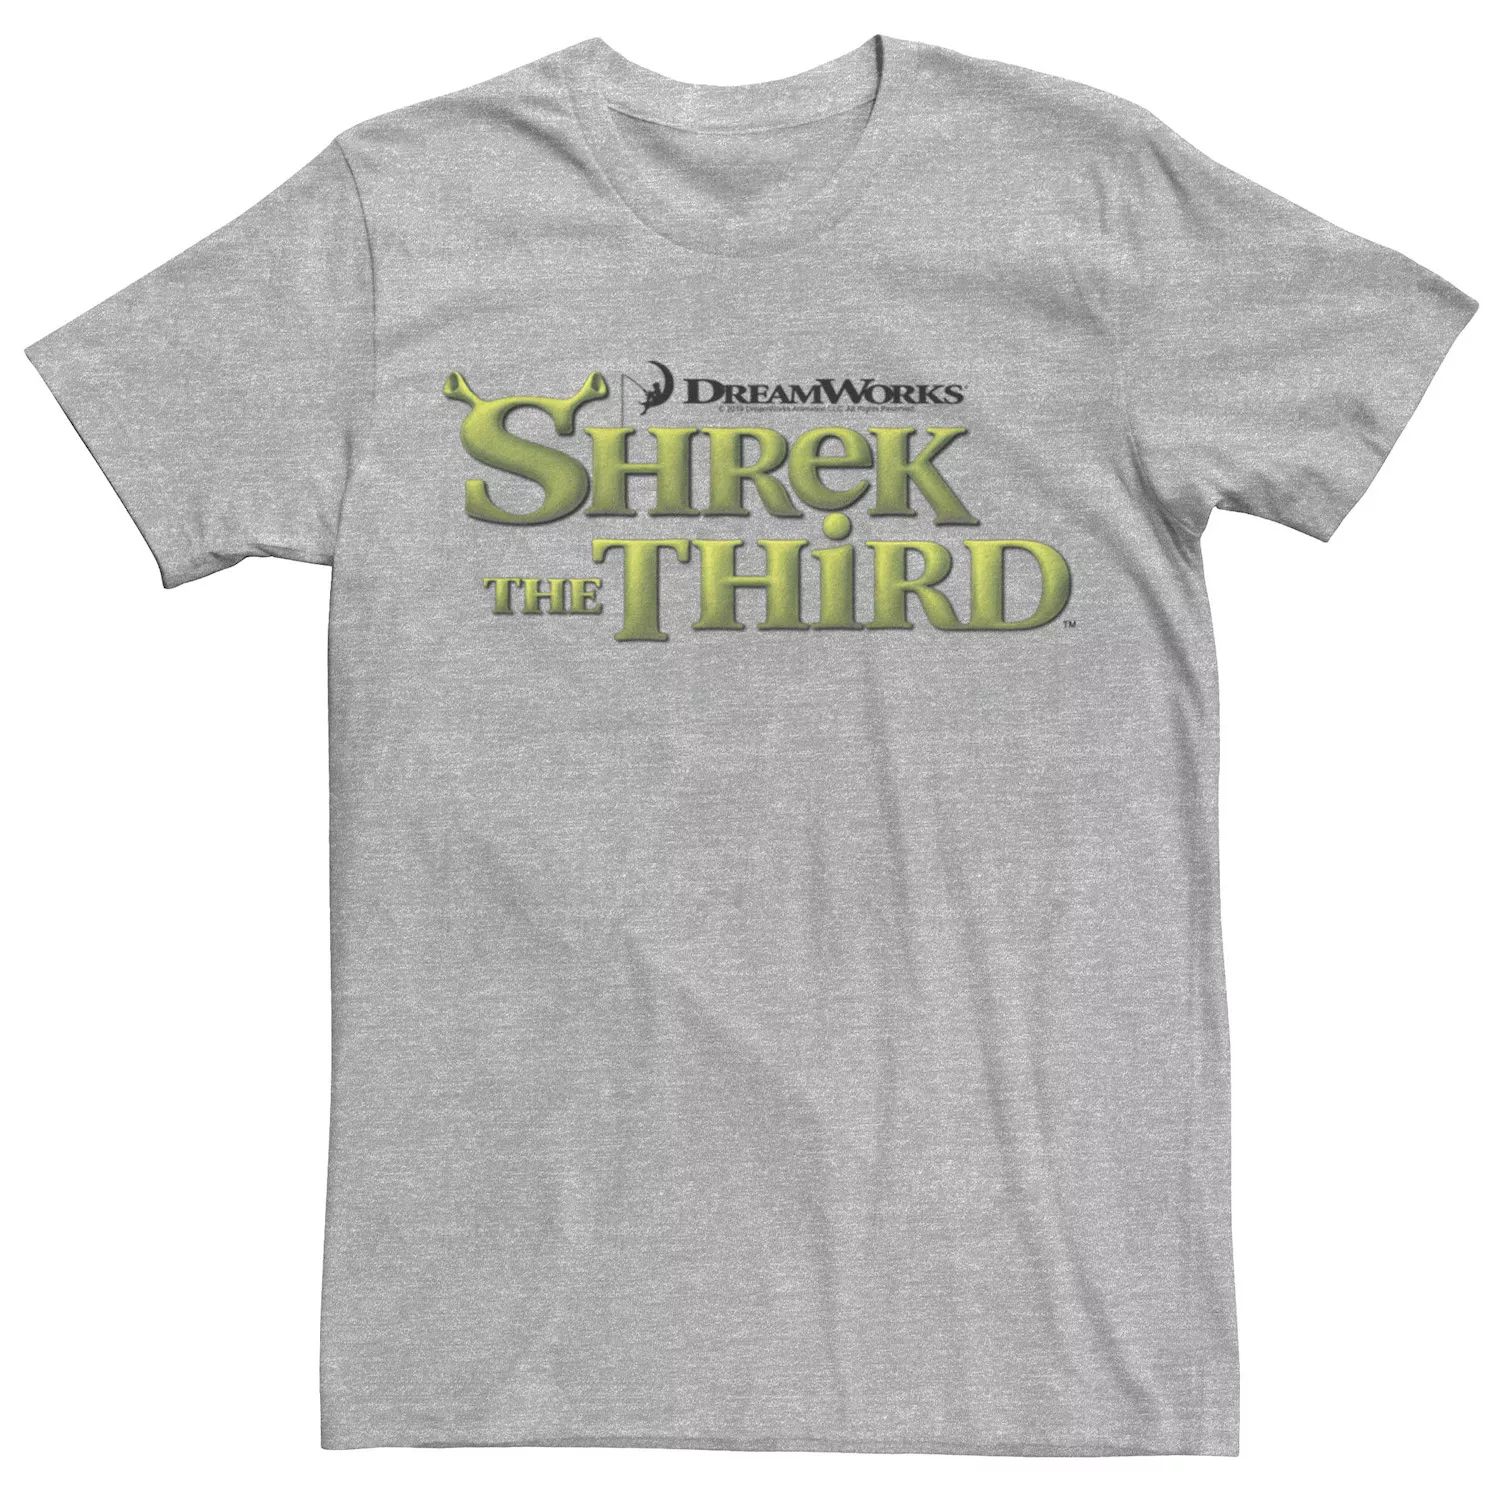 Мужская футболка с логотипом Shrek The Third DreamWorks Ogre Title Licensed Character